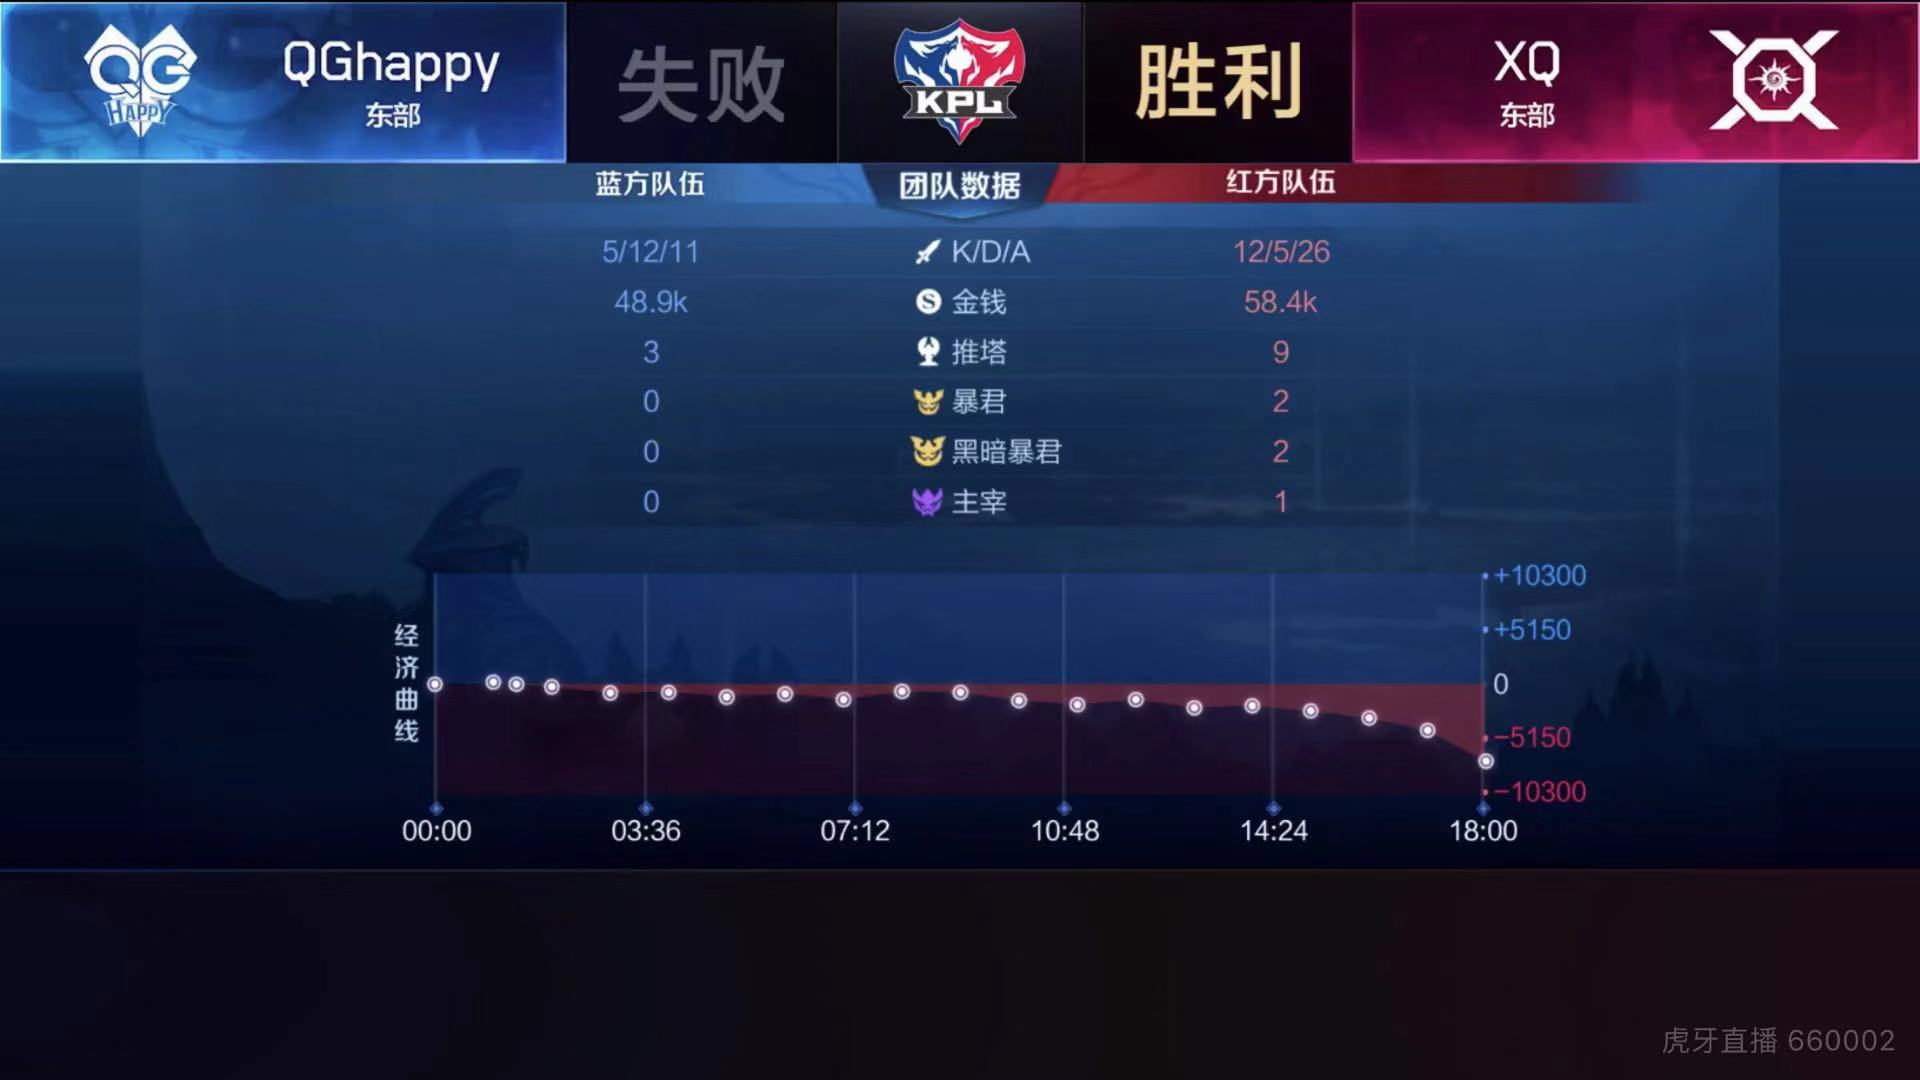 [战报] XQ鏖战五局 成功终止QGhappy连胜步伐